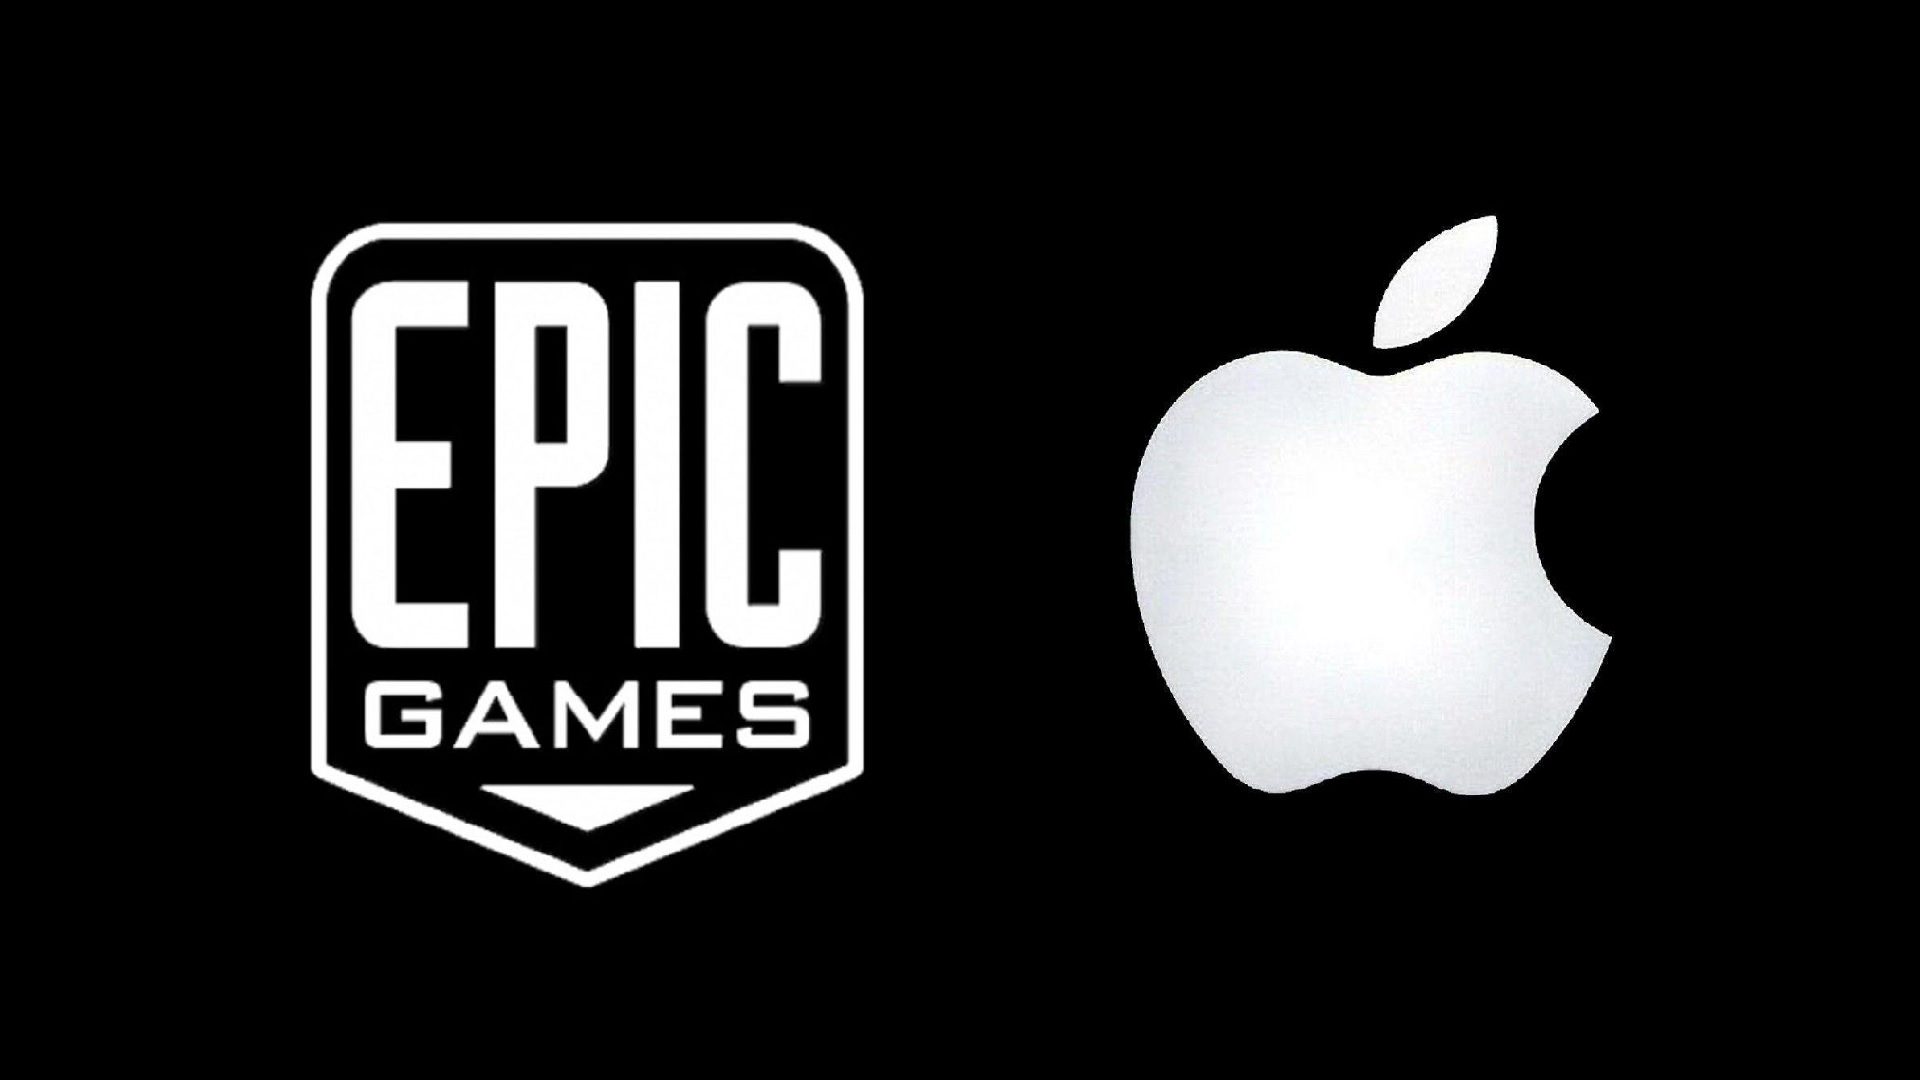 epik-games-apple-2786171